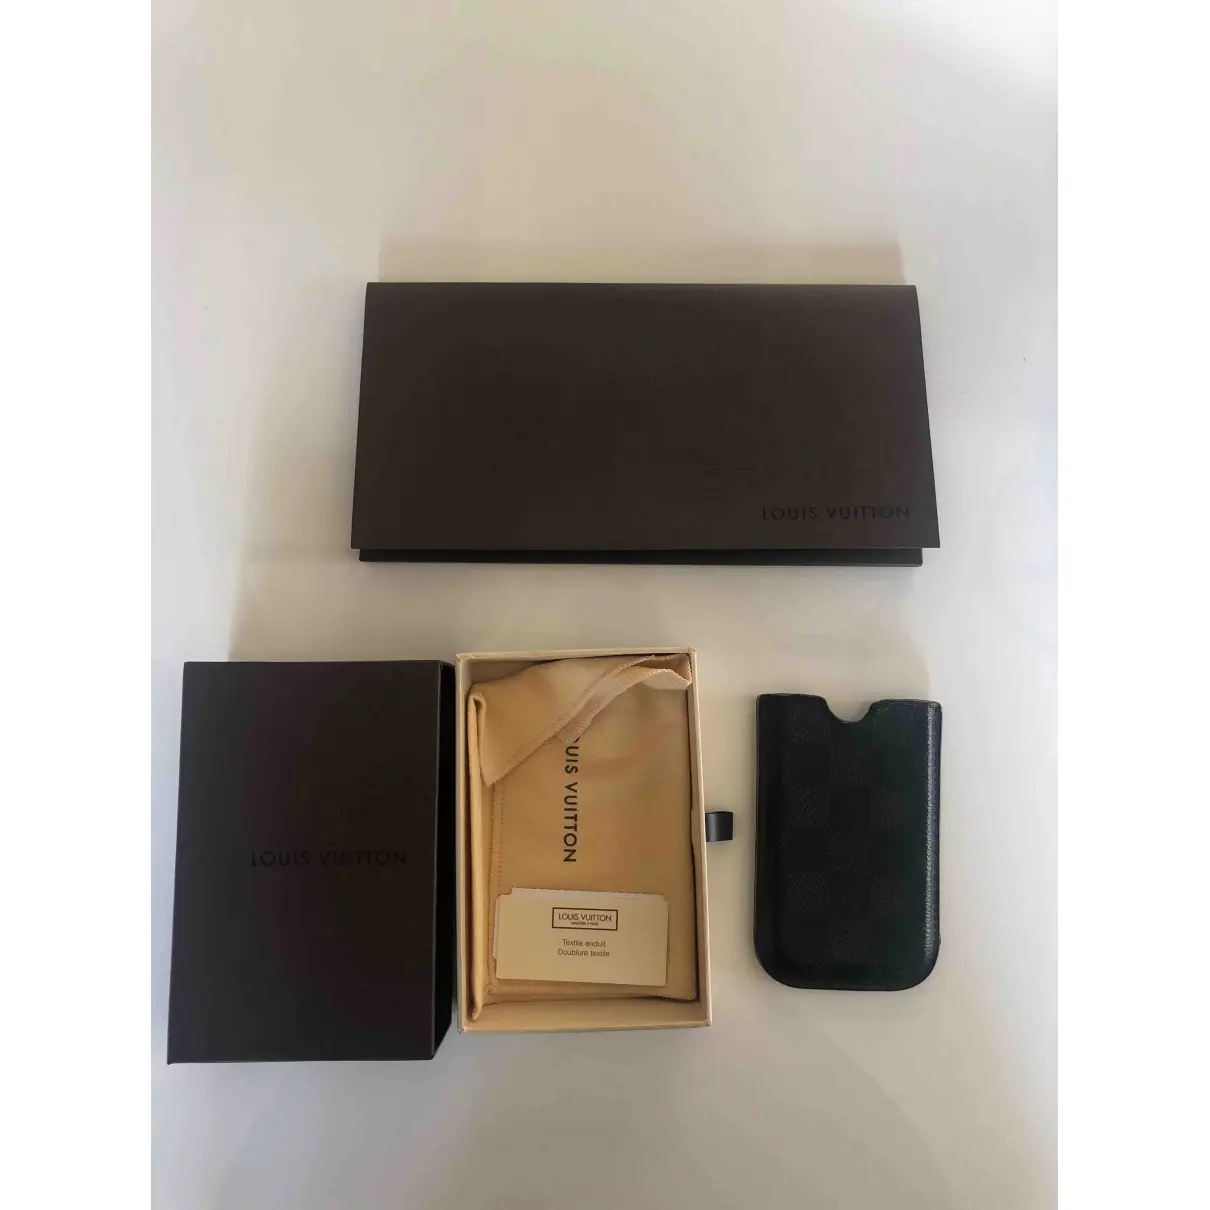 Louis Vuitton Cloth iphone case for sale